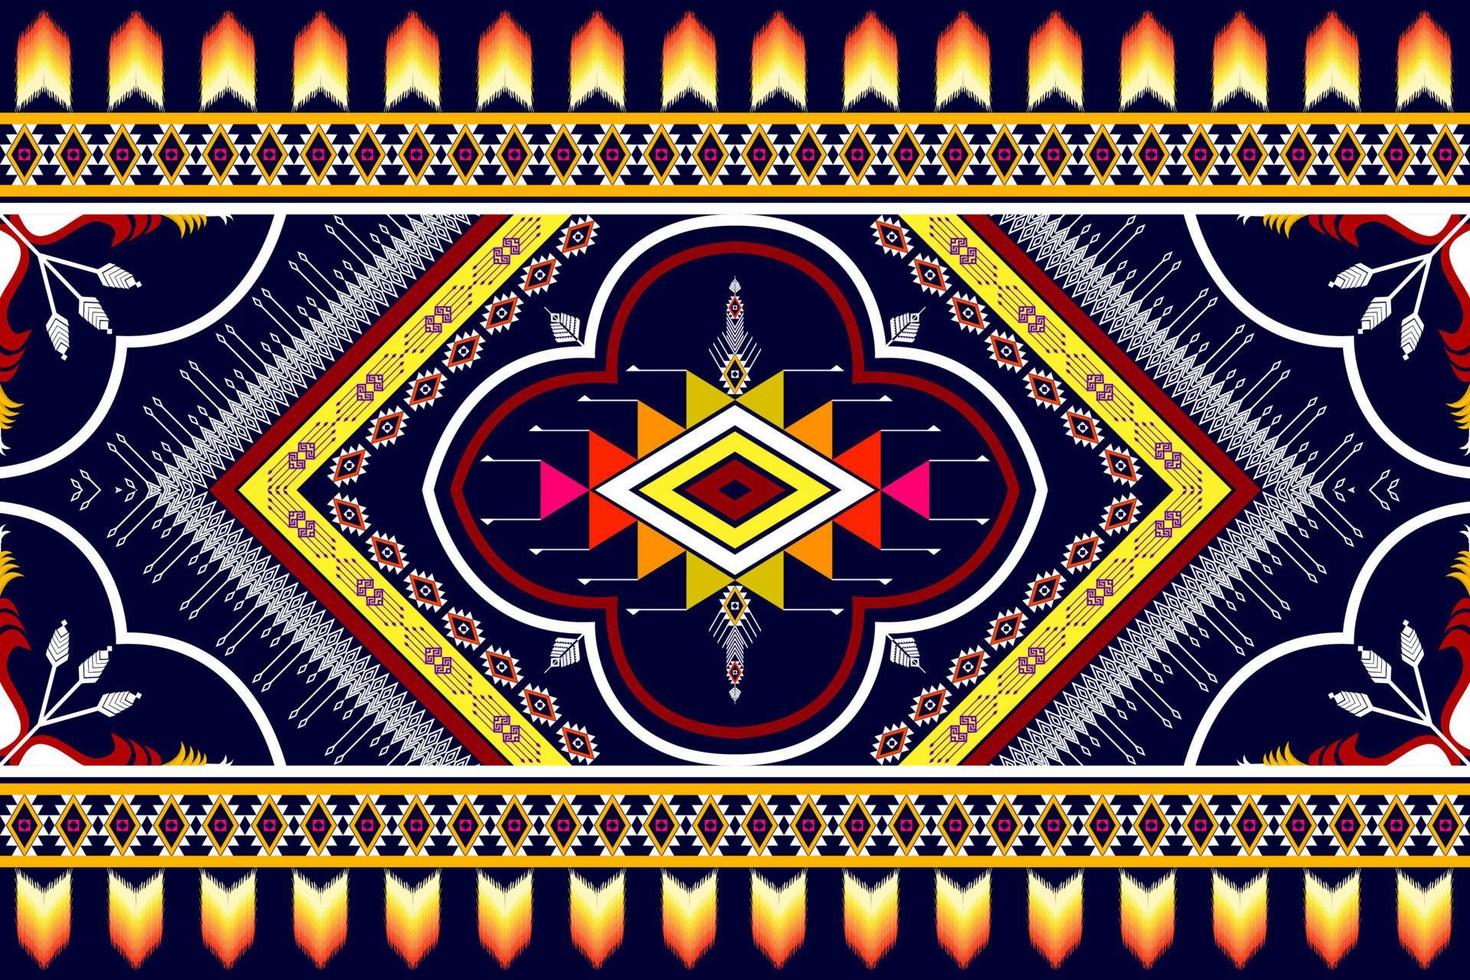 geometrisch abstract etnisch patroonontwerp. Azteekse stof tapijt mandala ornament etnische chevron textiel decoratie behang. tribal boho inheemse traditionele borduurwerk vector illustraties achtergrond